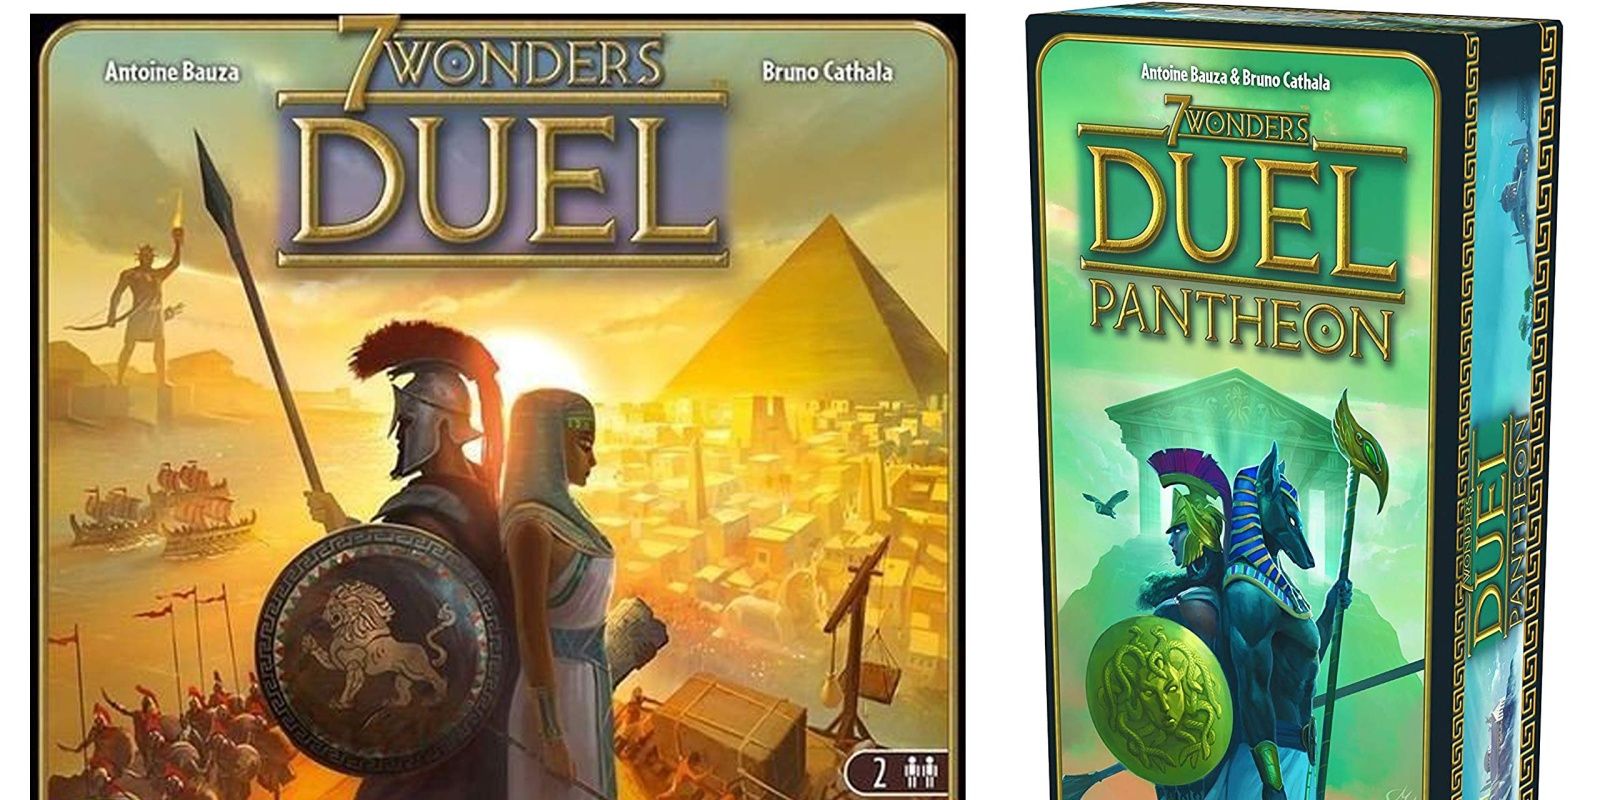 7 Wonders Duel Pantheon Board Game Expansion Box